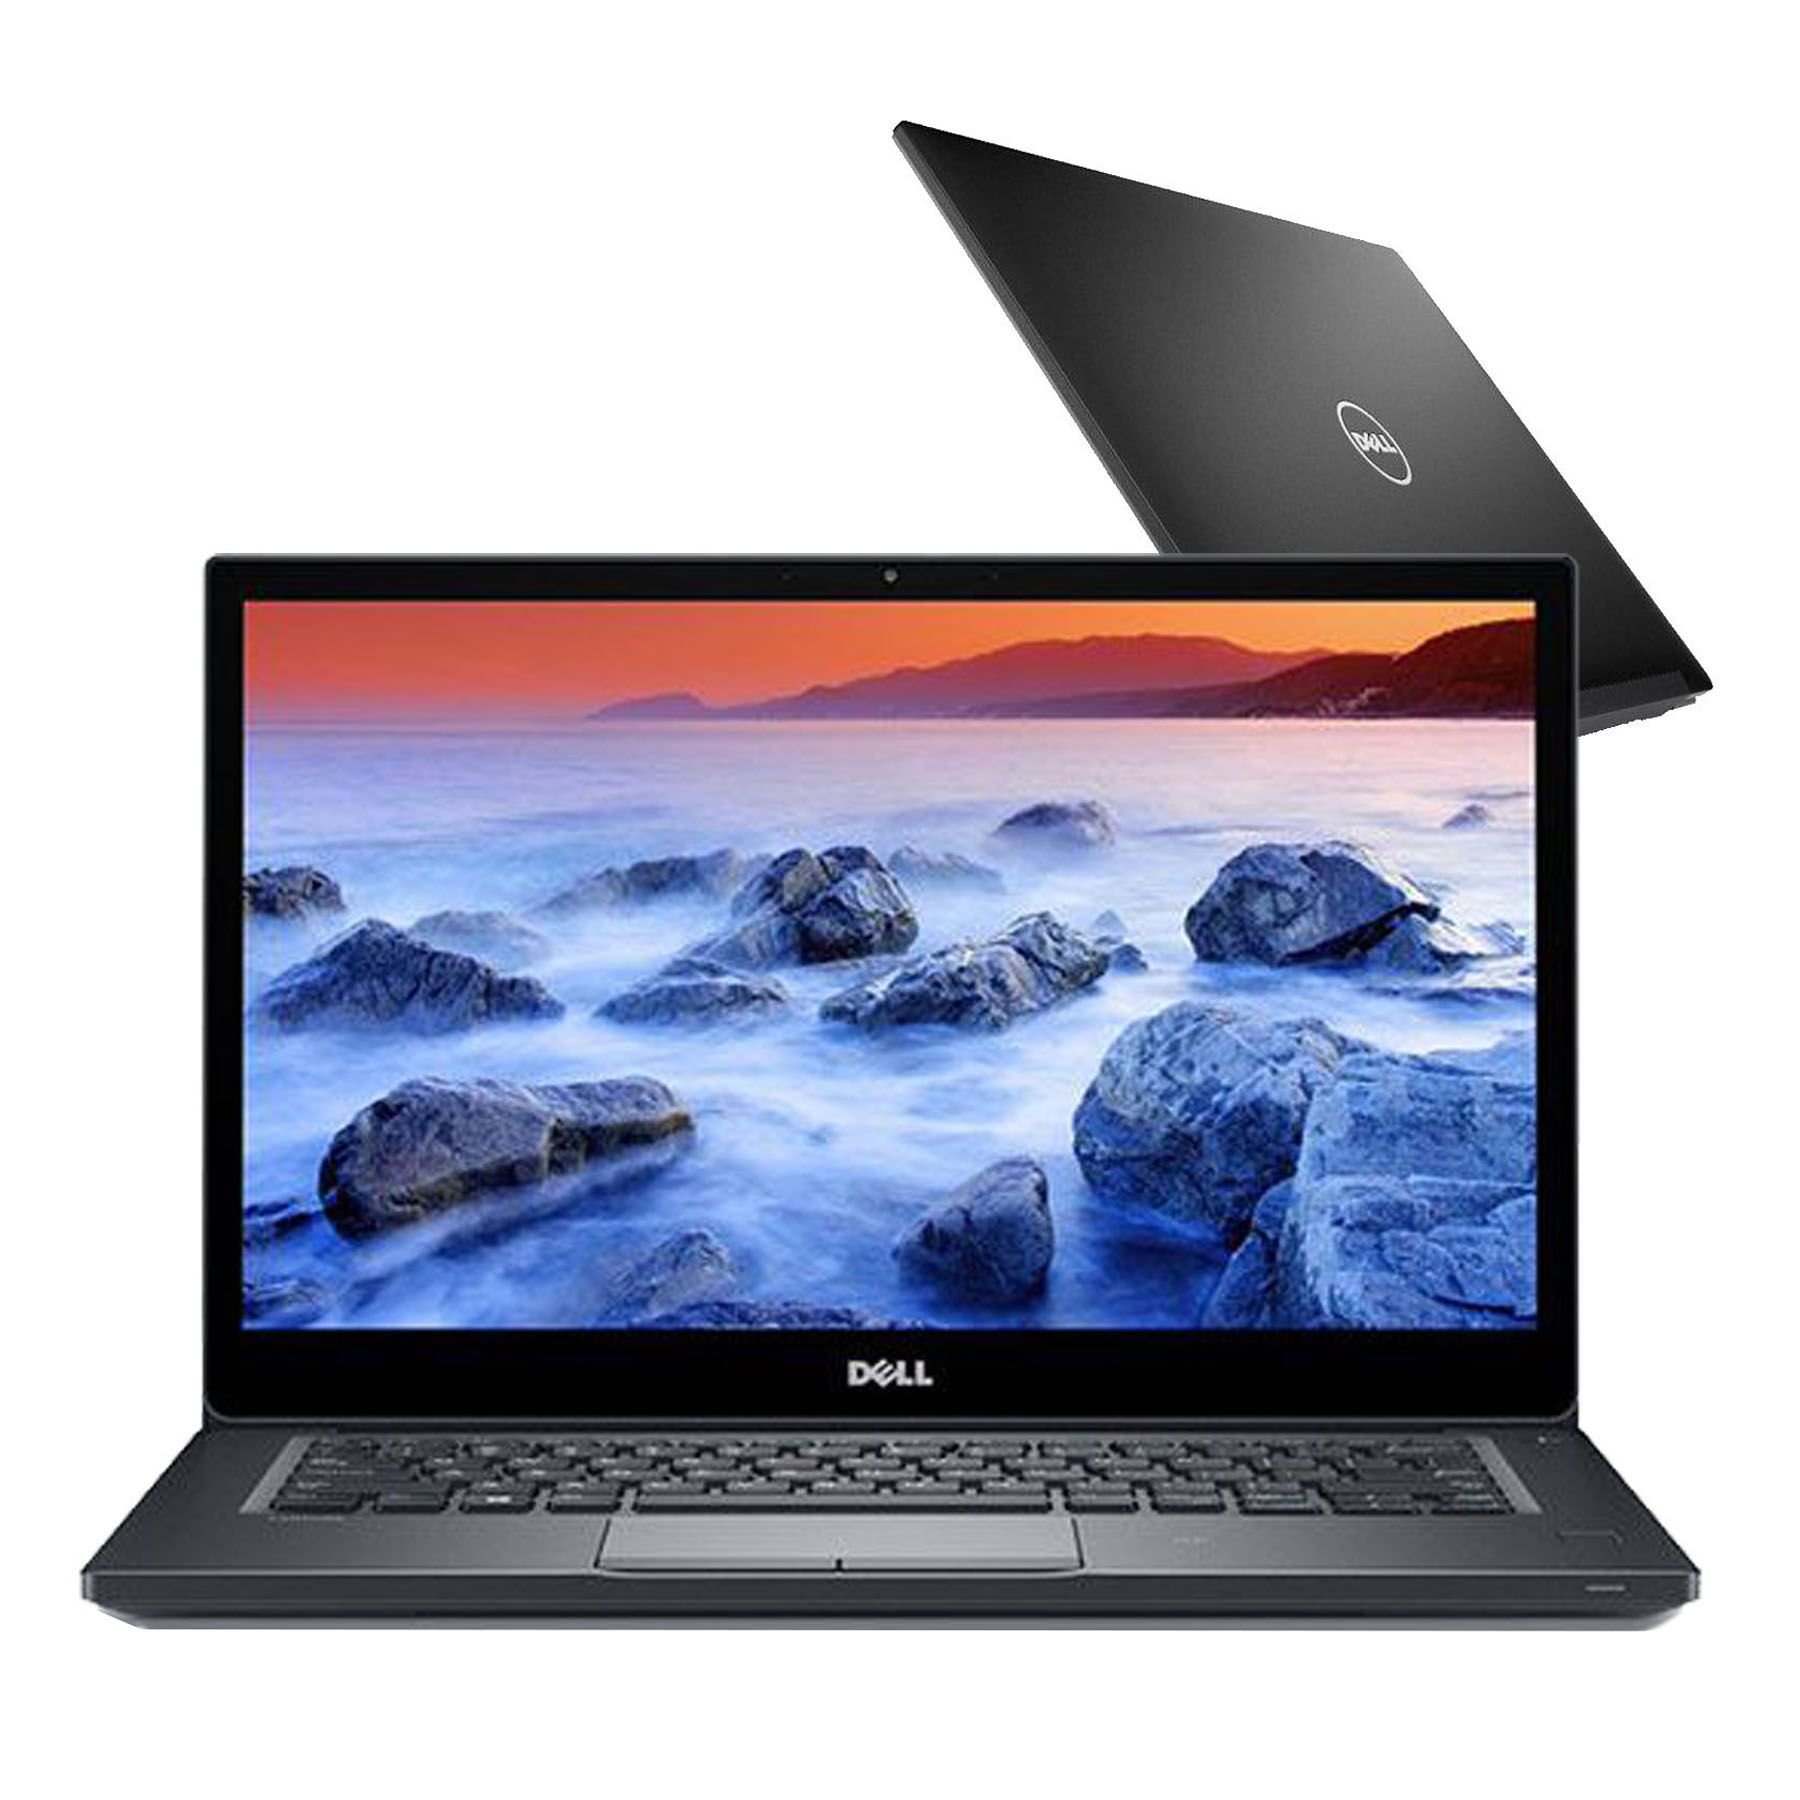 Laptop cũ Dell Latitude E7480 Core i7-7600U, 8GB, 256GB, HD Graphics 520, 14.0 inch FHD